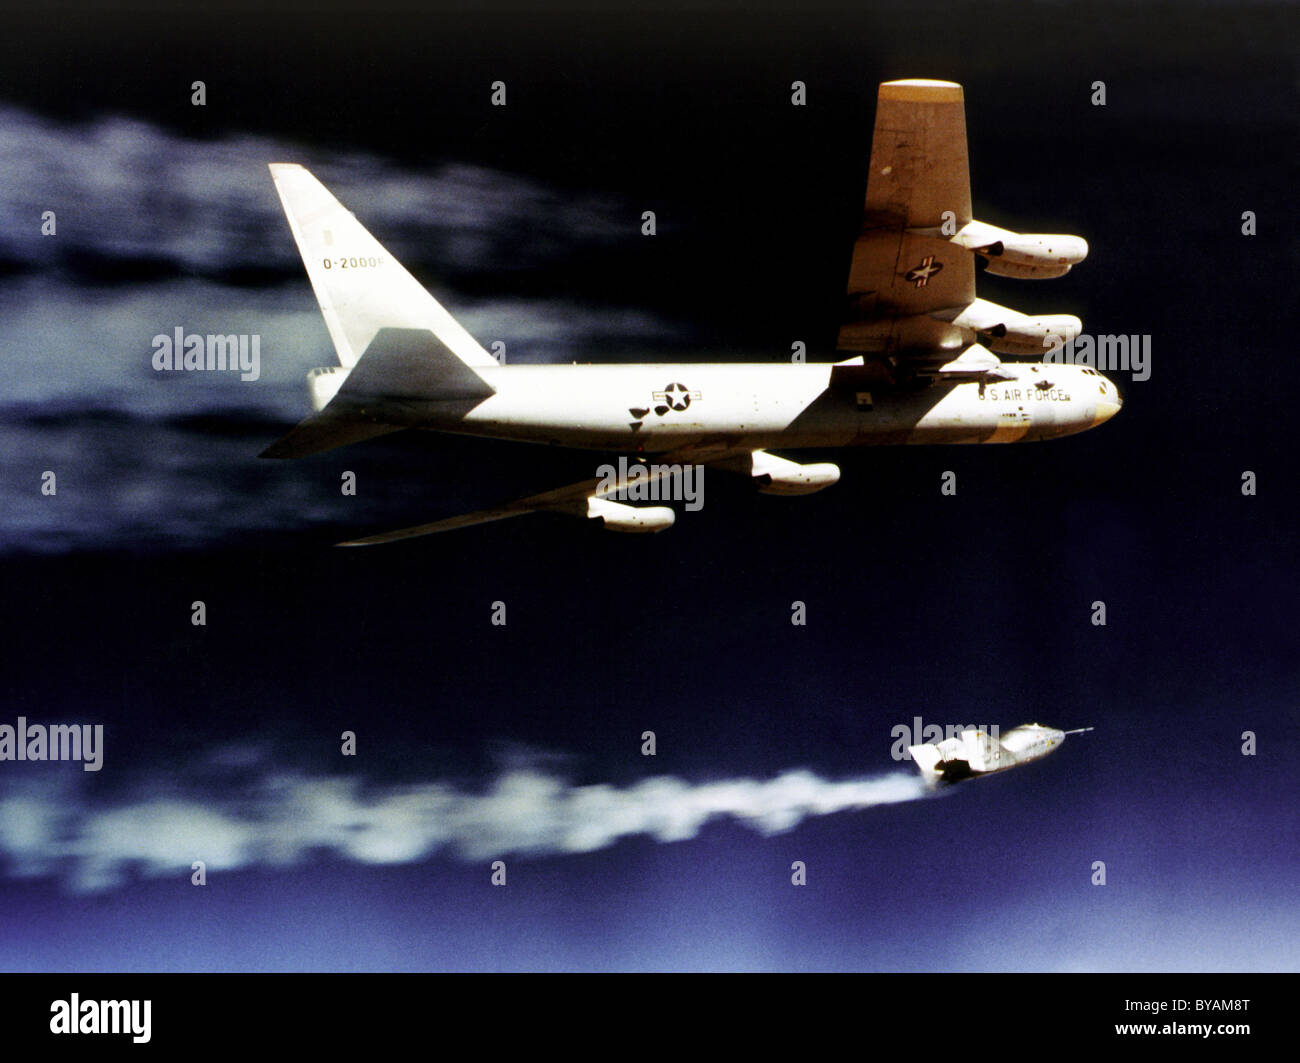 X-24un sollevamento-corpo aerei di ricerca inizia il suo razzo-powered volo dopo essere stato lanciato da ala della NASA B-52 mothership. Foto Stock